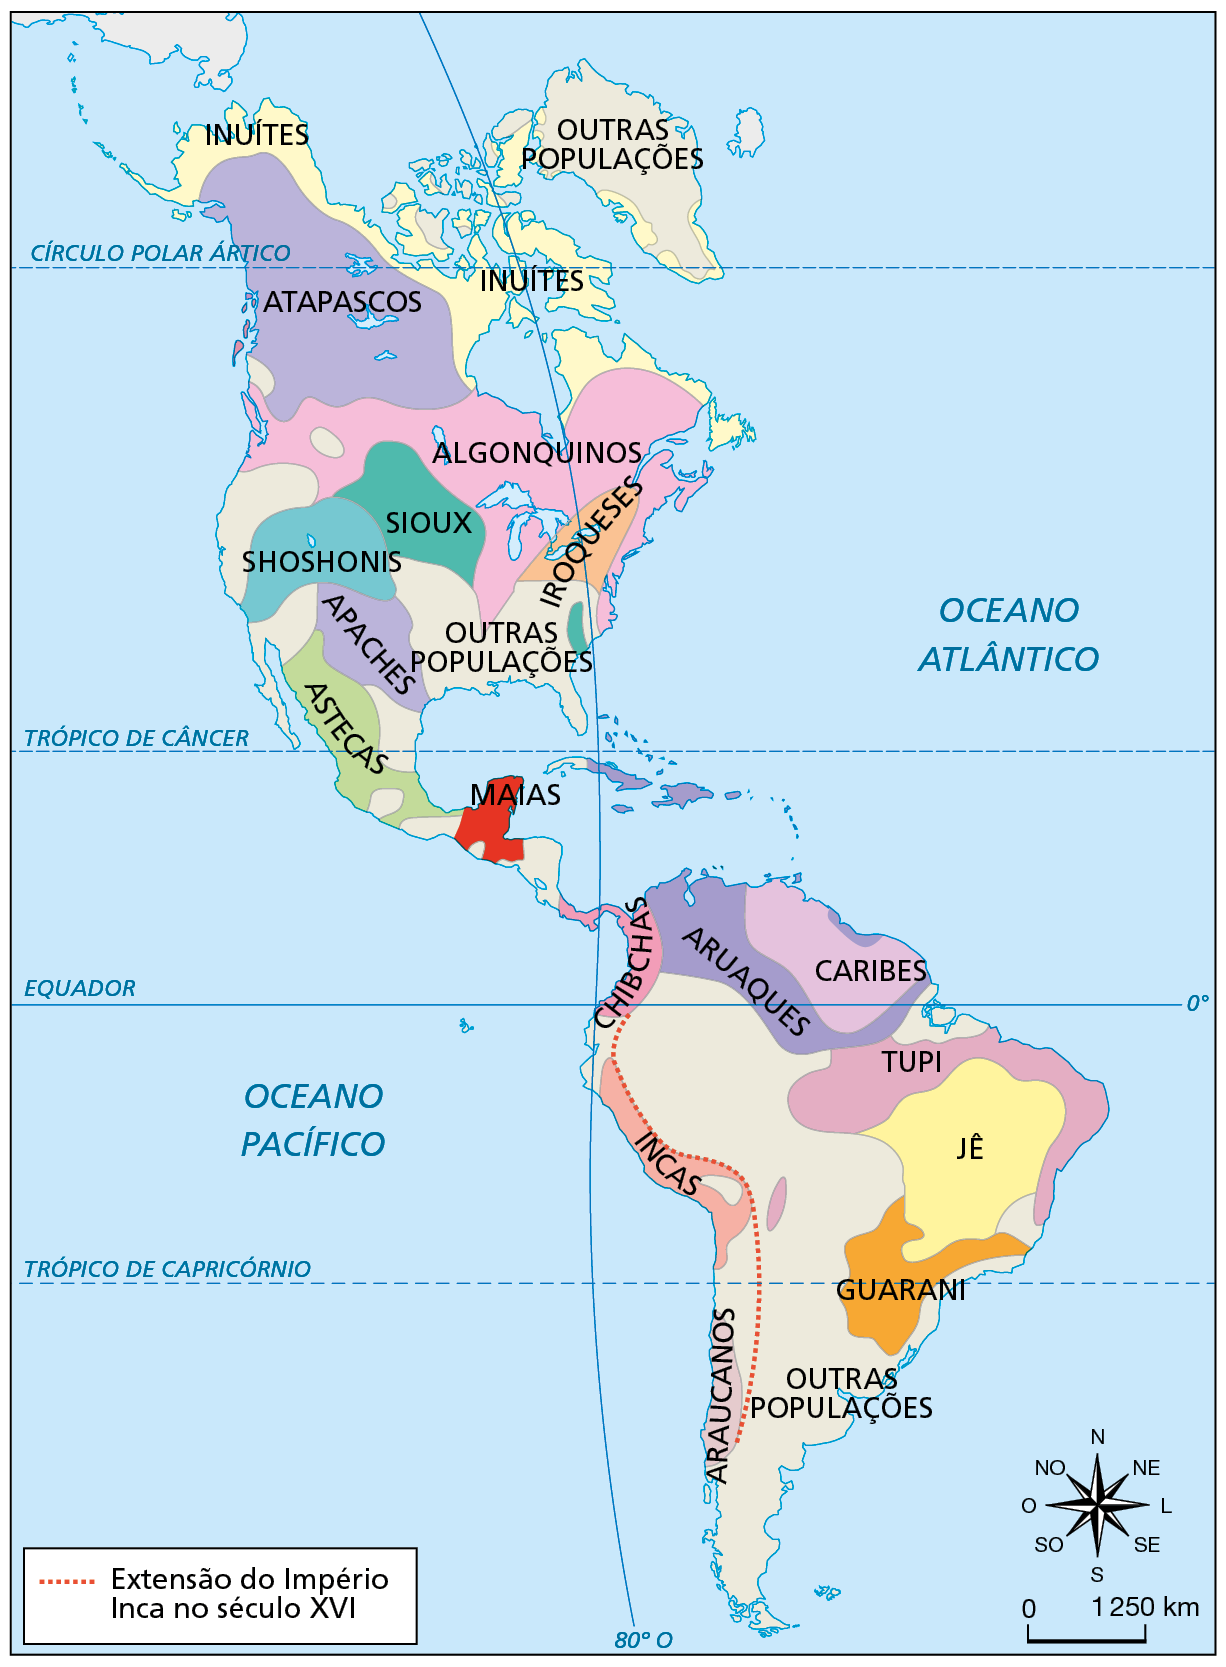 Mapa. Principais povos originários da América (séculos dez a dezesseis). Destaque para o continente americano. Na América do Sul, destaque para os povos Guarani (na porção sudeste do território), Jê (na porção leste e nordeste) e Tupi (na costa nordeste e porção centro-leste).  Na costa oeste, Araucanos, Incas e Chibchas, povo que também se estende ao sul da América Central. Definido por uma linha pontilhada, 'Extensão do Império Inca no século dezesseis', compreendendo extensa porção territorial na costa oeste da América do Sul. Na porção norte do território sul-americano, destaque para Caribes e Aruaques. Na porção sul, a indicação 'Outras populações'. Na América Central, destaque para Maias e Aruaques. No sul da América do Norte, destaque para Astecas. Na porção central da América do Norte, destaque para Apaches, Shoshonis, Sioux, Algonquinos, Iroqueses e outras populações. No extremo norte, Atapascos, Inuítes e outras populações. No canto inferior direito, rosa dos ventos e escala de 0 a 1.250 quilômetros.